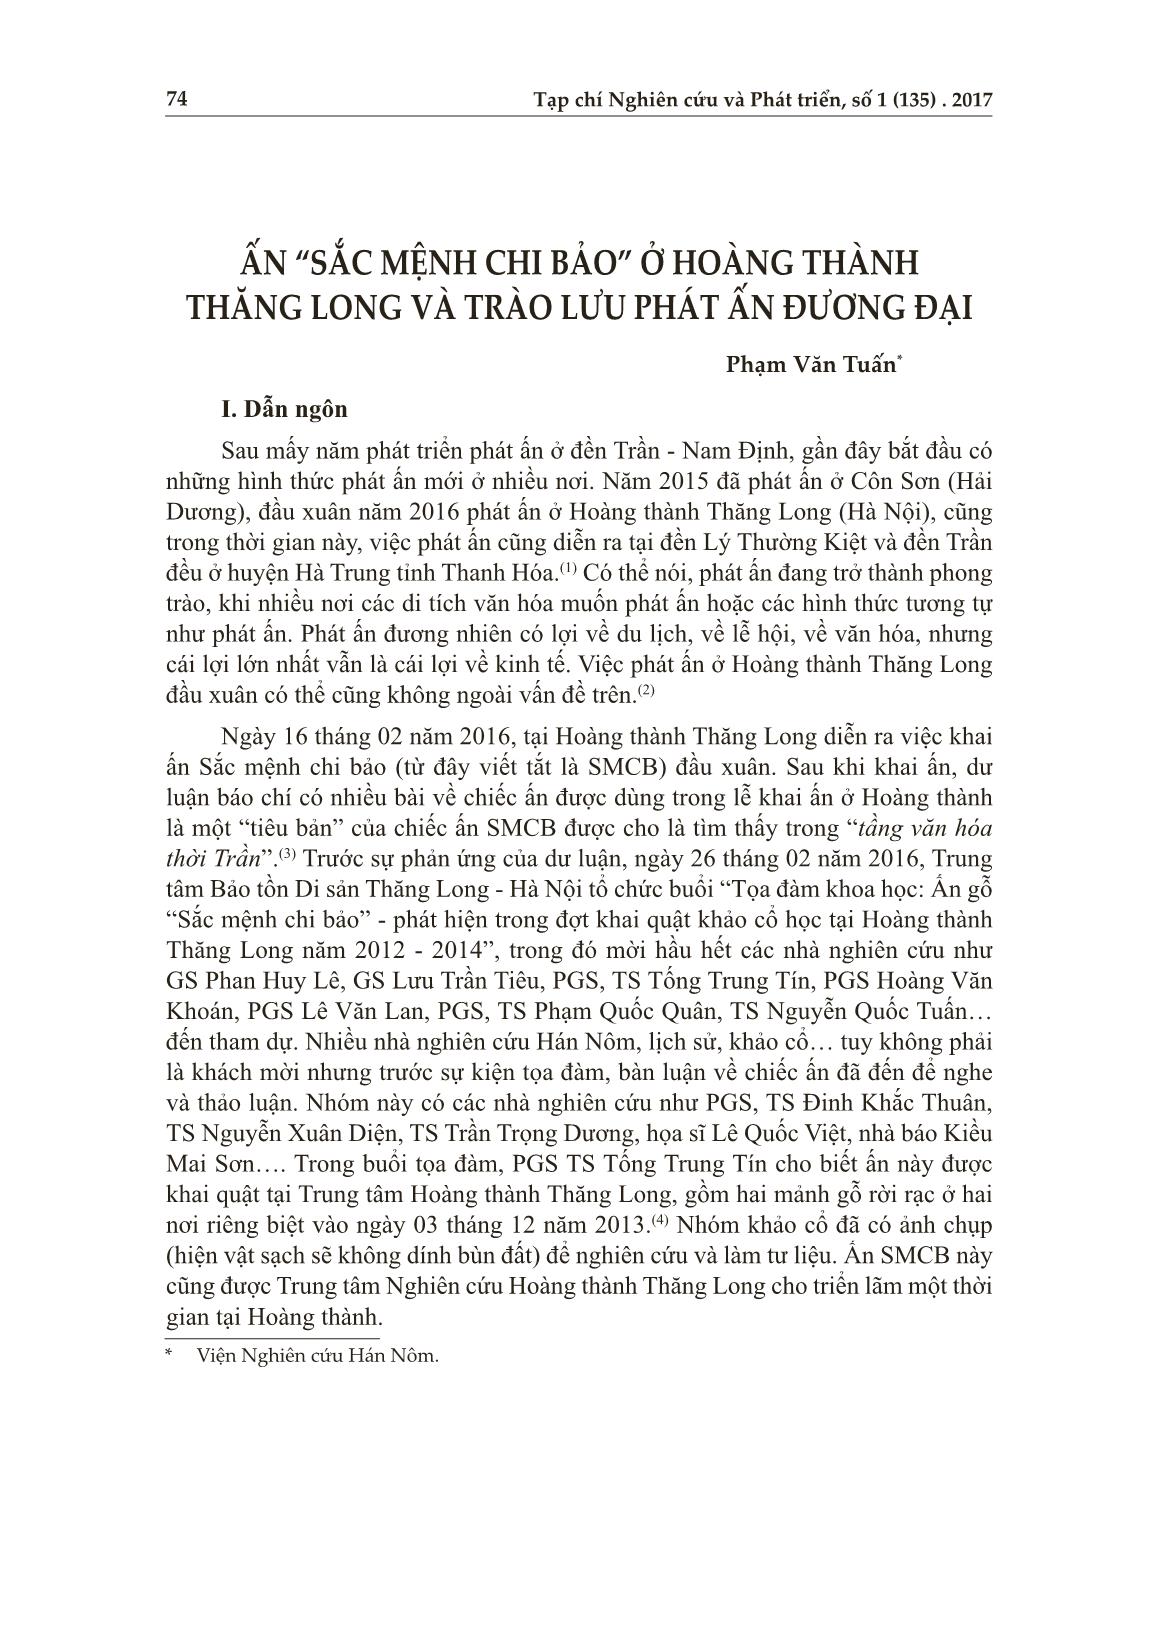 Ấn “sắc mệnh chi bảo” ở Hoàng thành Thăng Long và trào lưu phát ấn đương đại trang 1